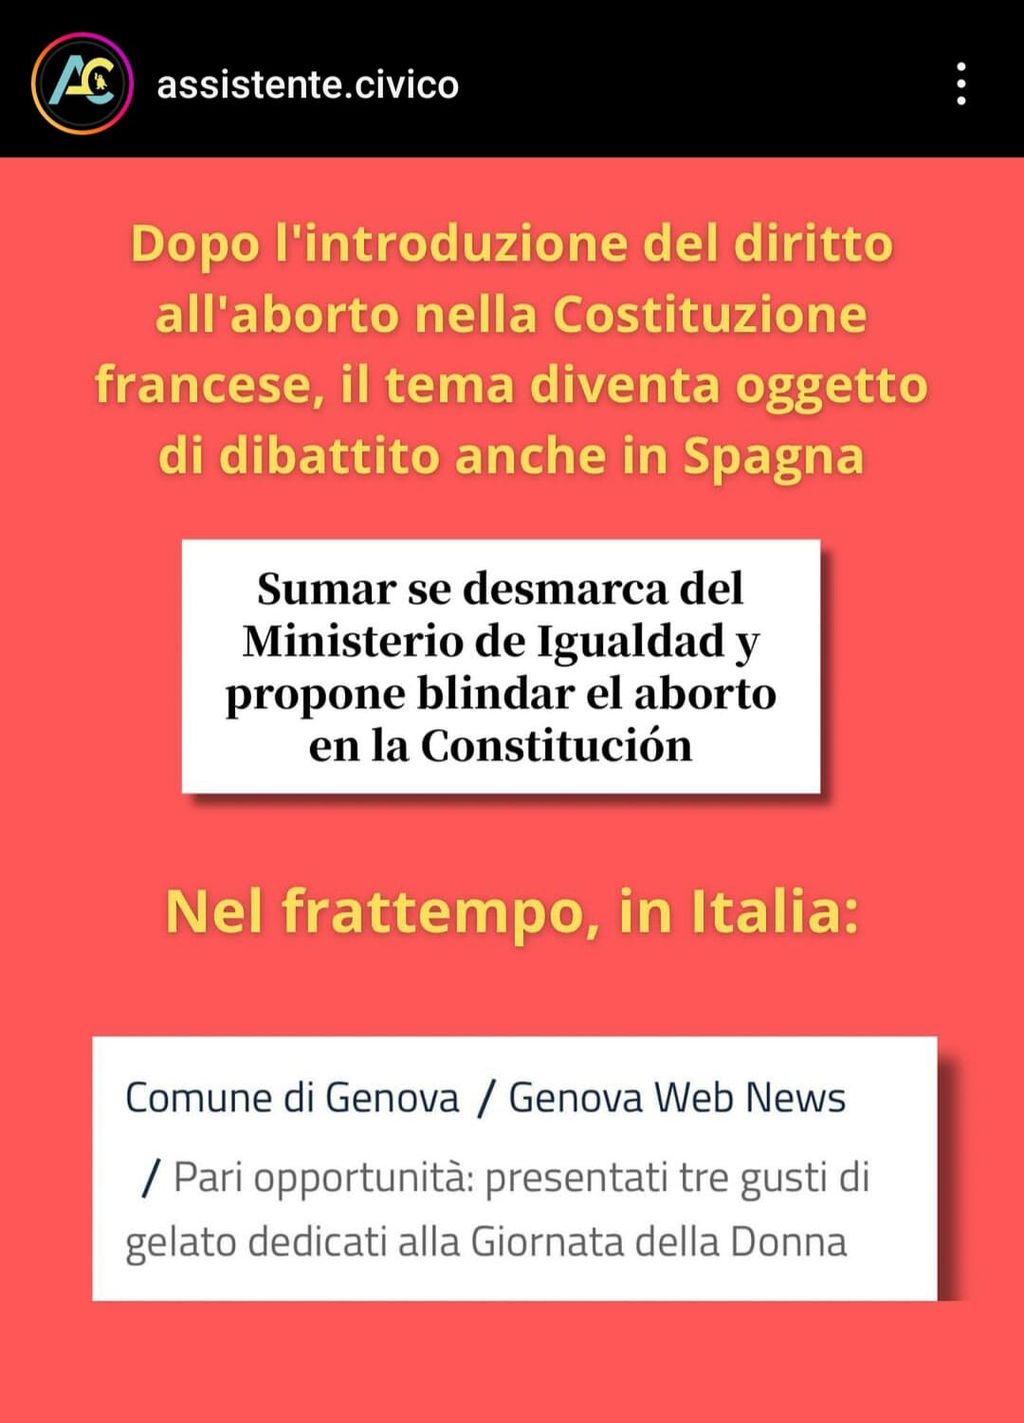 Il paragone tra Francia, Spagna e Italia, tra aborto e gelato